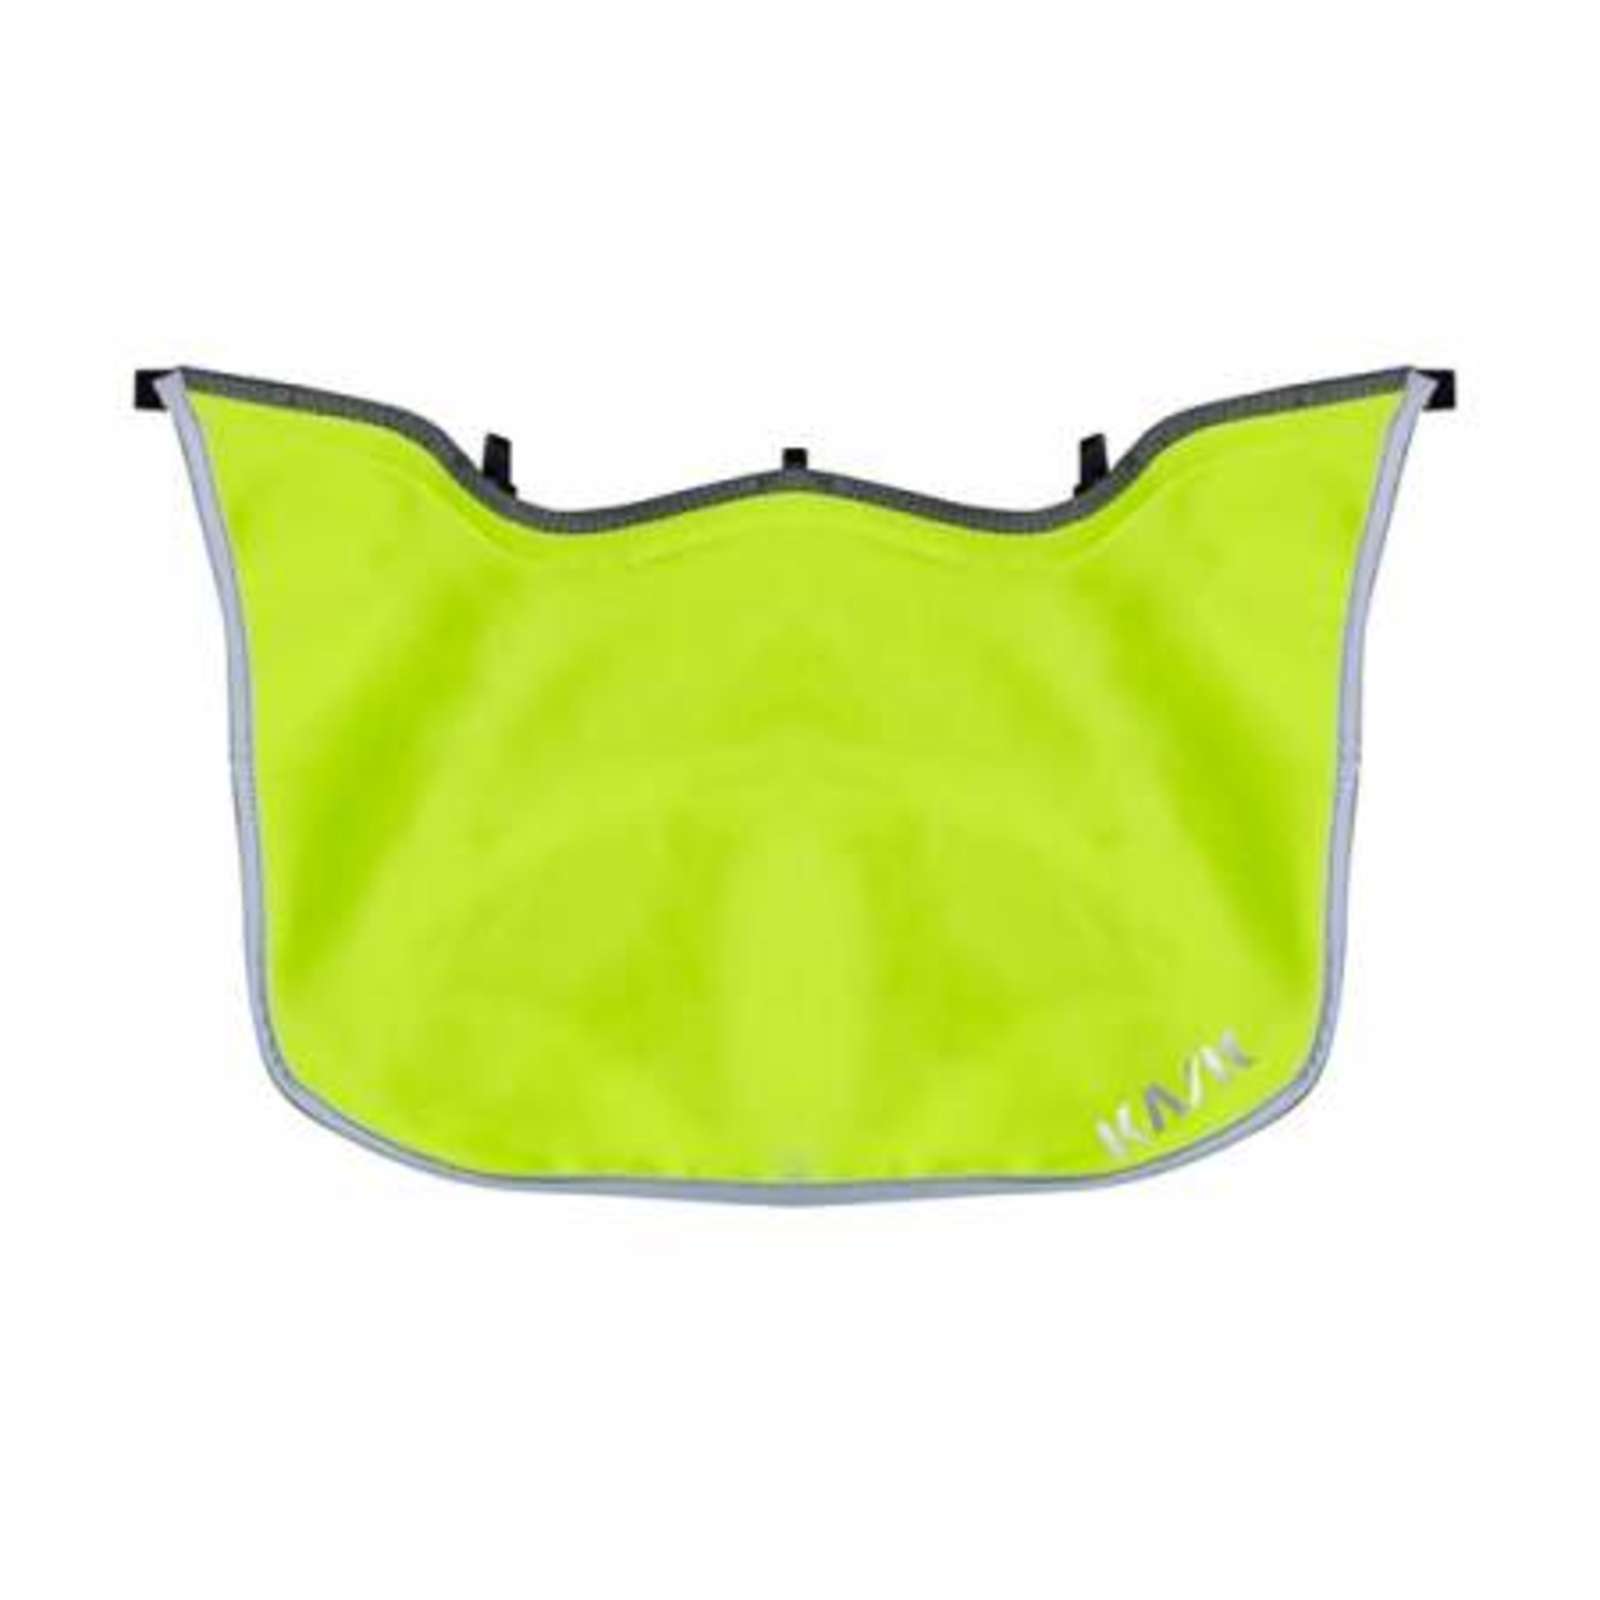 KASK Ohren- und Nackenschutz RW für Zenith - Windschutz, Kälteschutz, UV- Schutz Farbe:gelb fluo von KASK